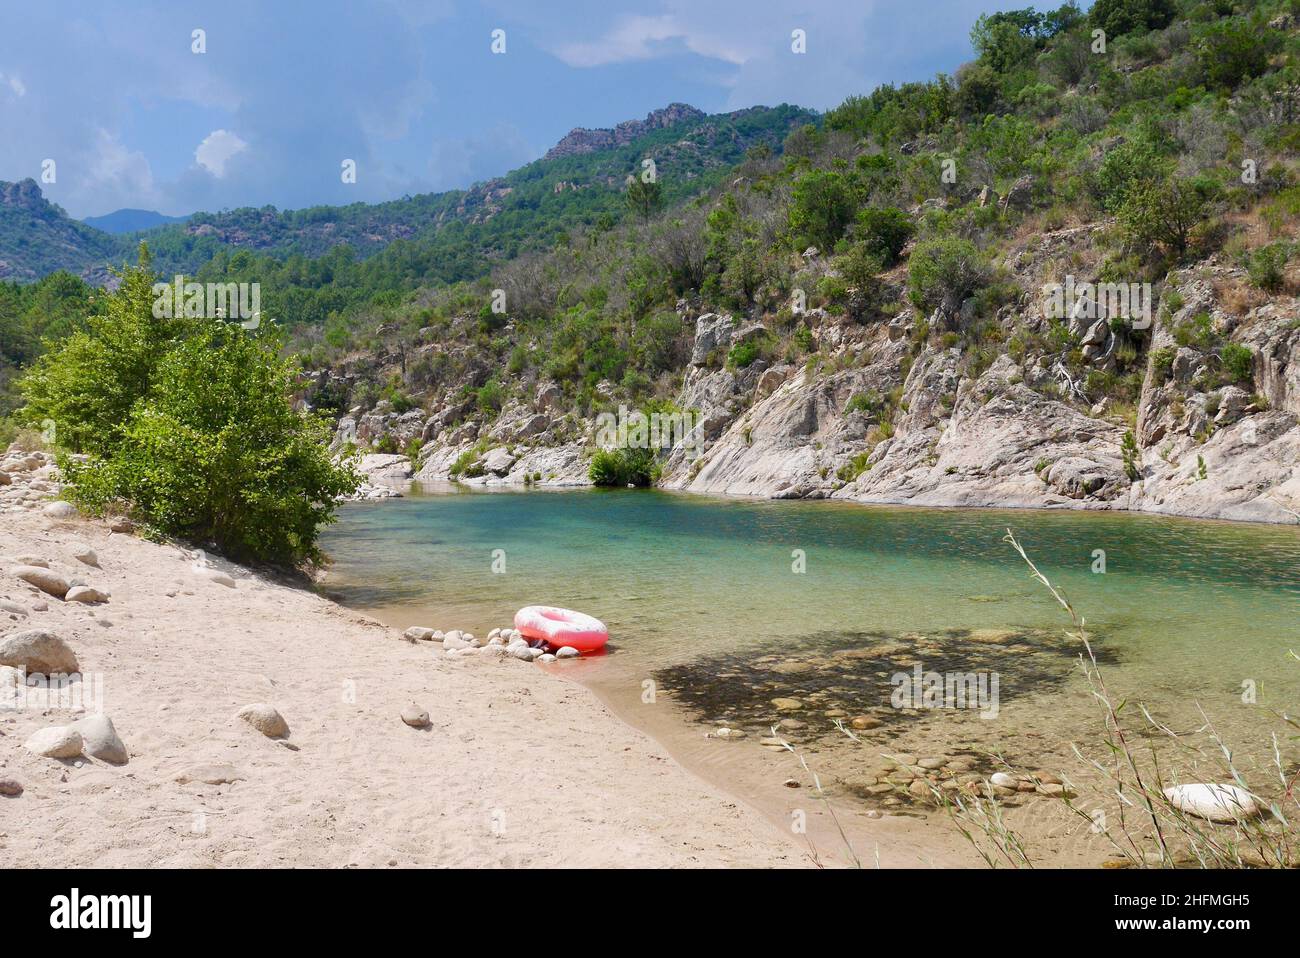 Pinker Gummiring am Fluss Solenzara mit türkisfarbenem Wasser und Sandstränden am Fuße der Bavella-Gipfel im Süden Korsikas, Frankreich. Qualitativ hochwertige Phot Stockfoto